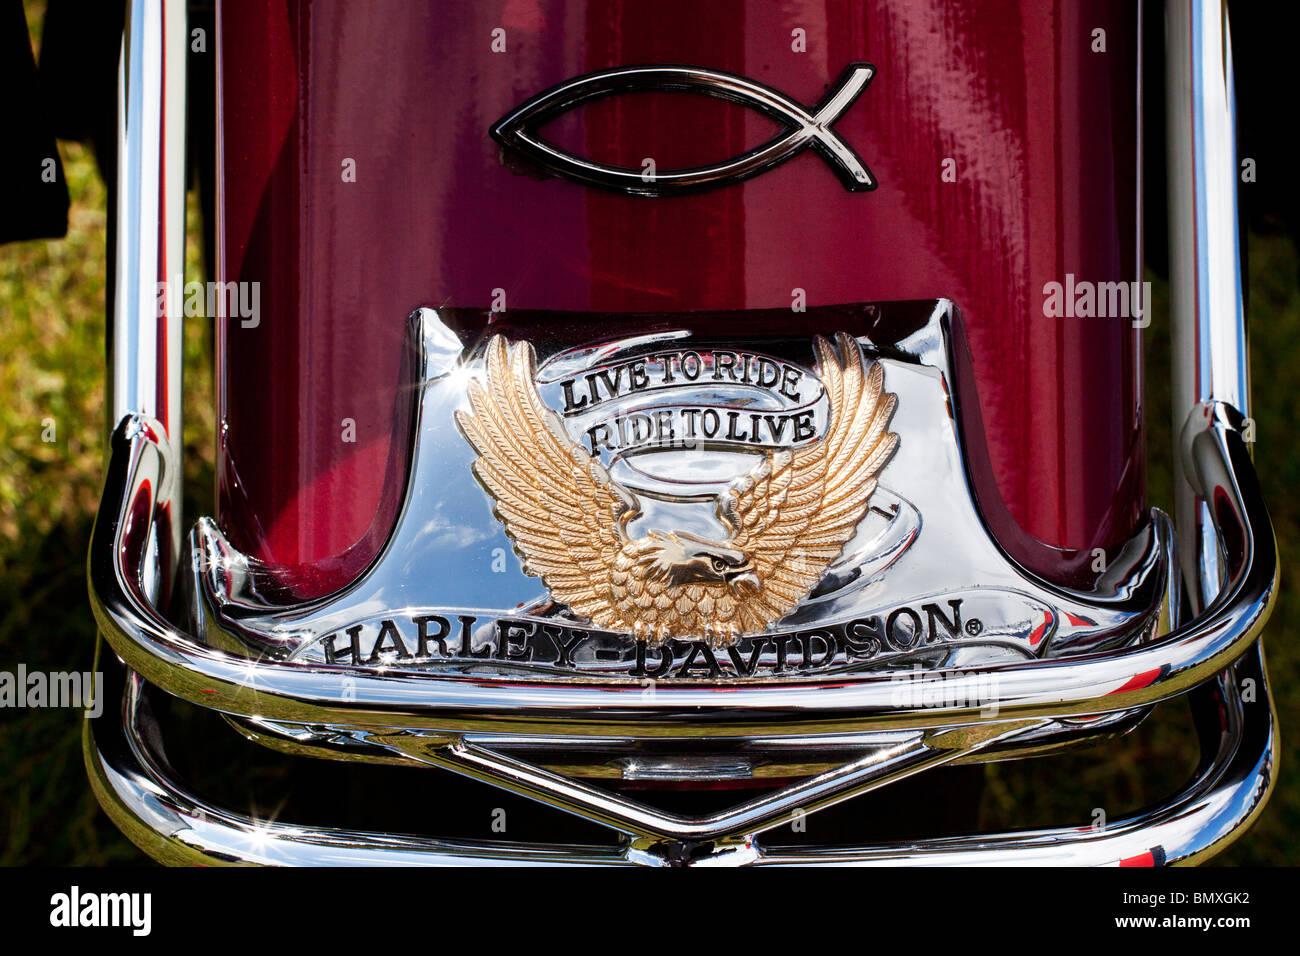 Una immagine colorata di un Harley Davidson Moto passaruota per Live ride ride di vivere Foto Stock